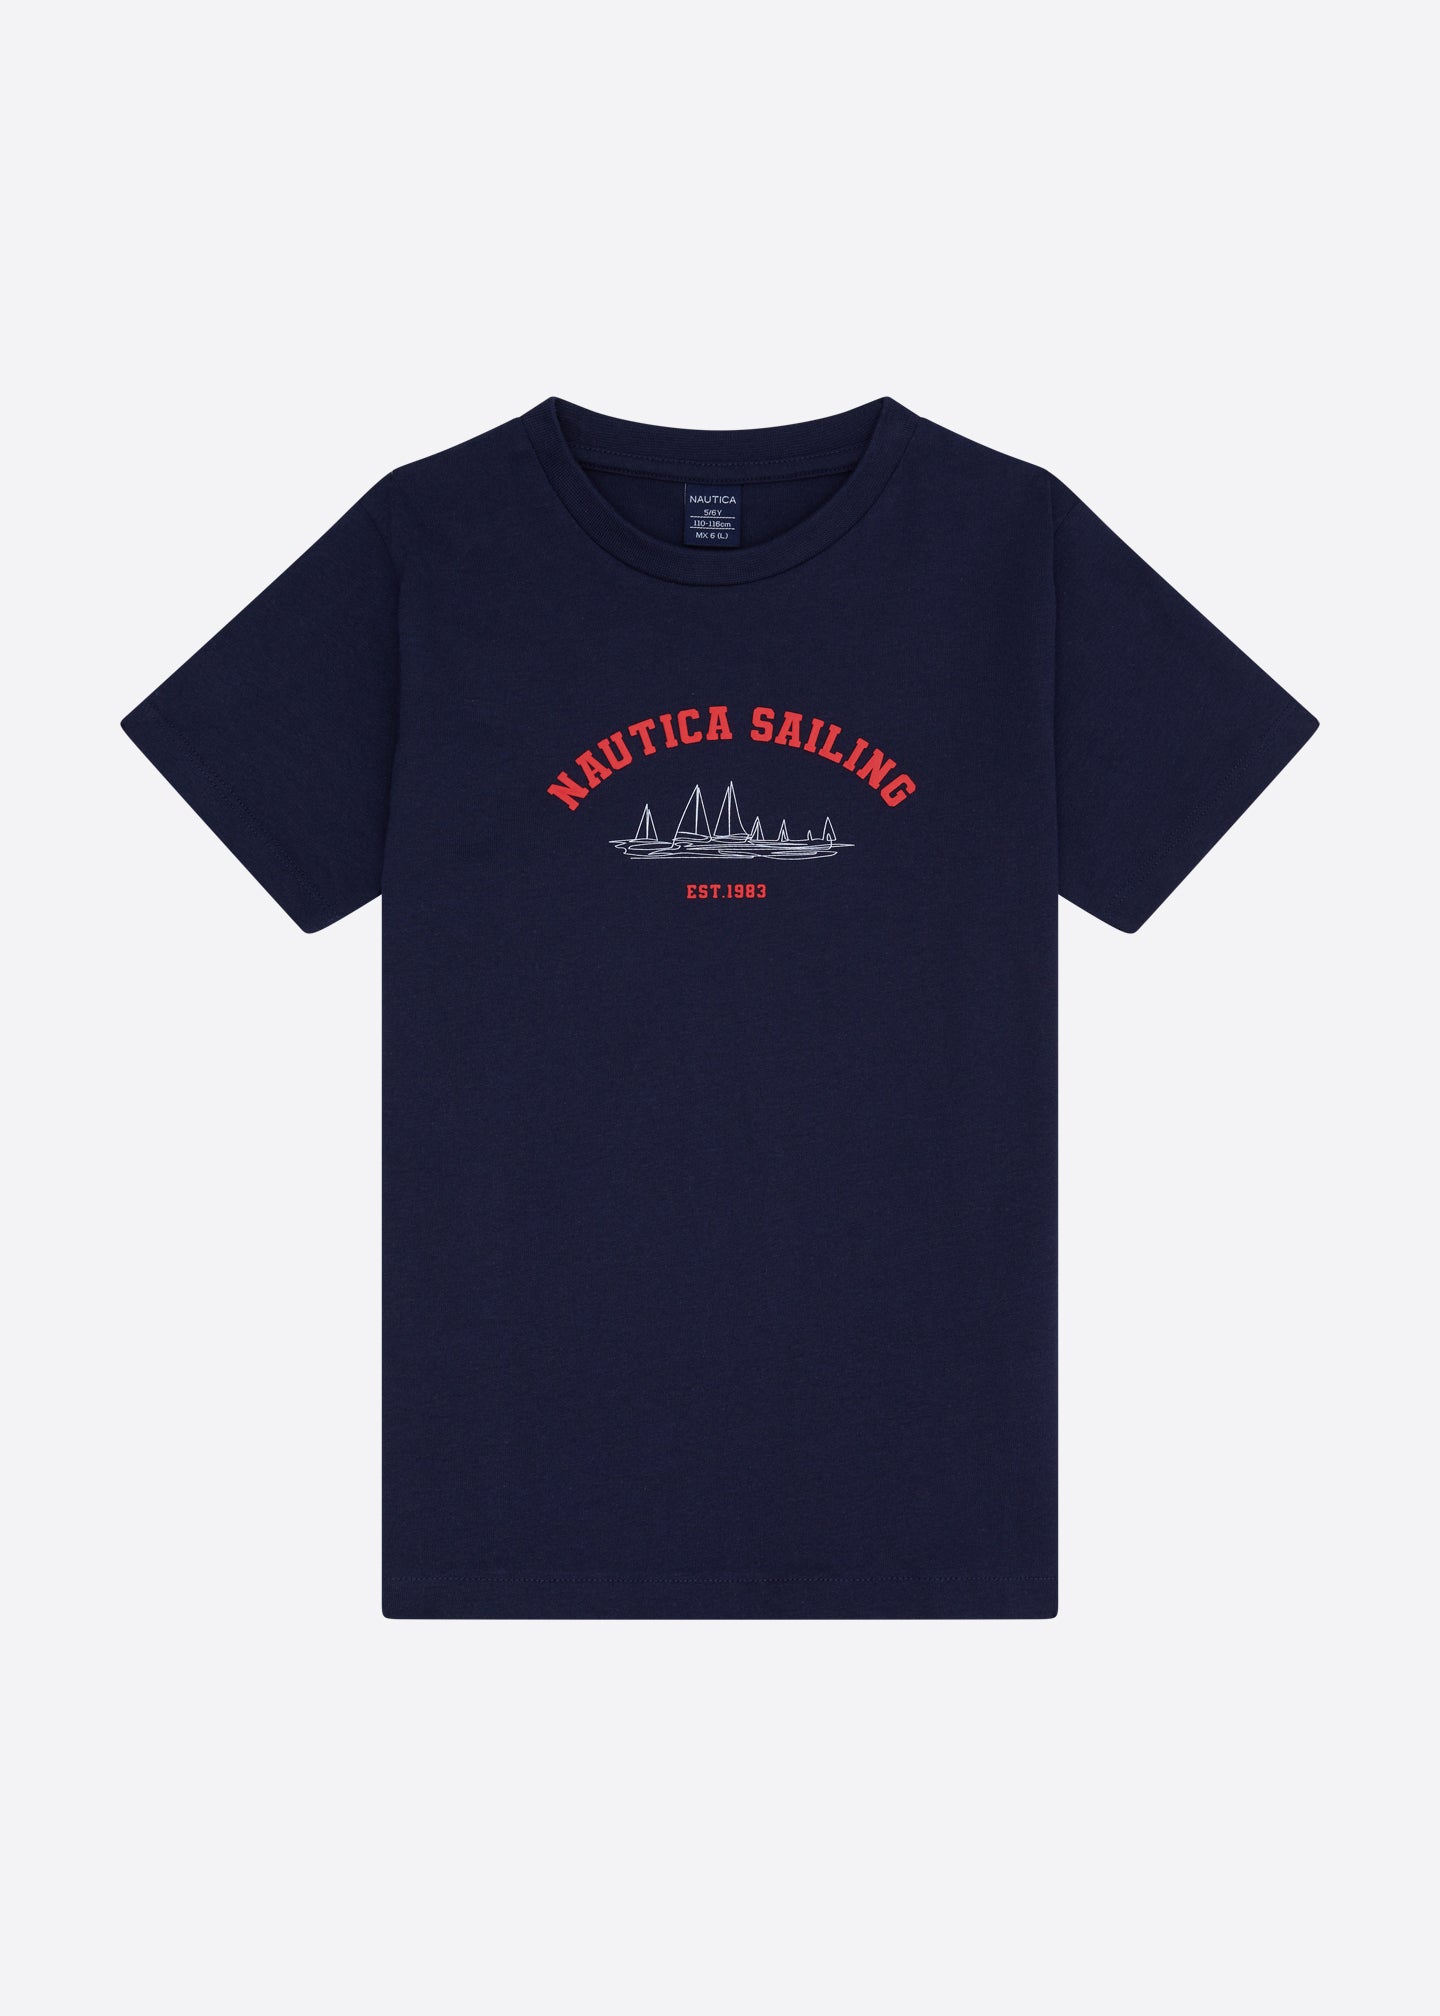 Ellie T-Shirt (Junior) - Dark Navy